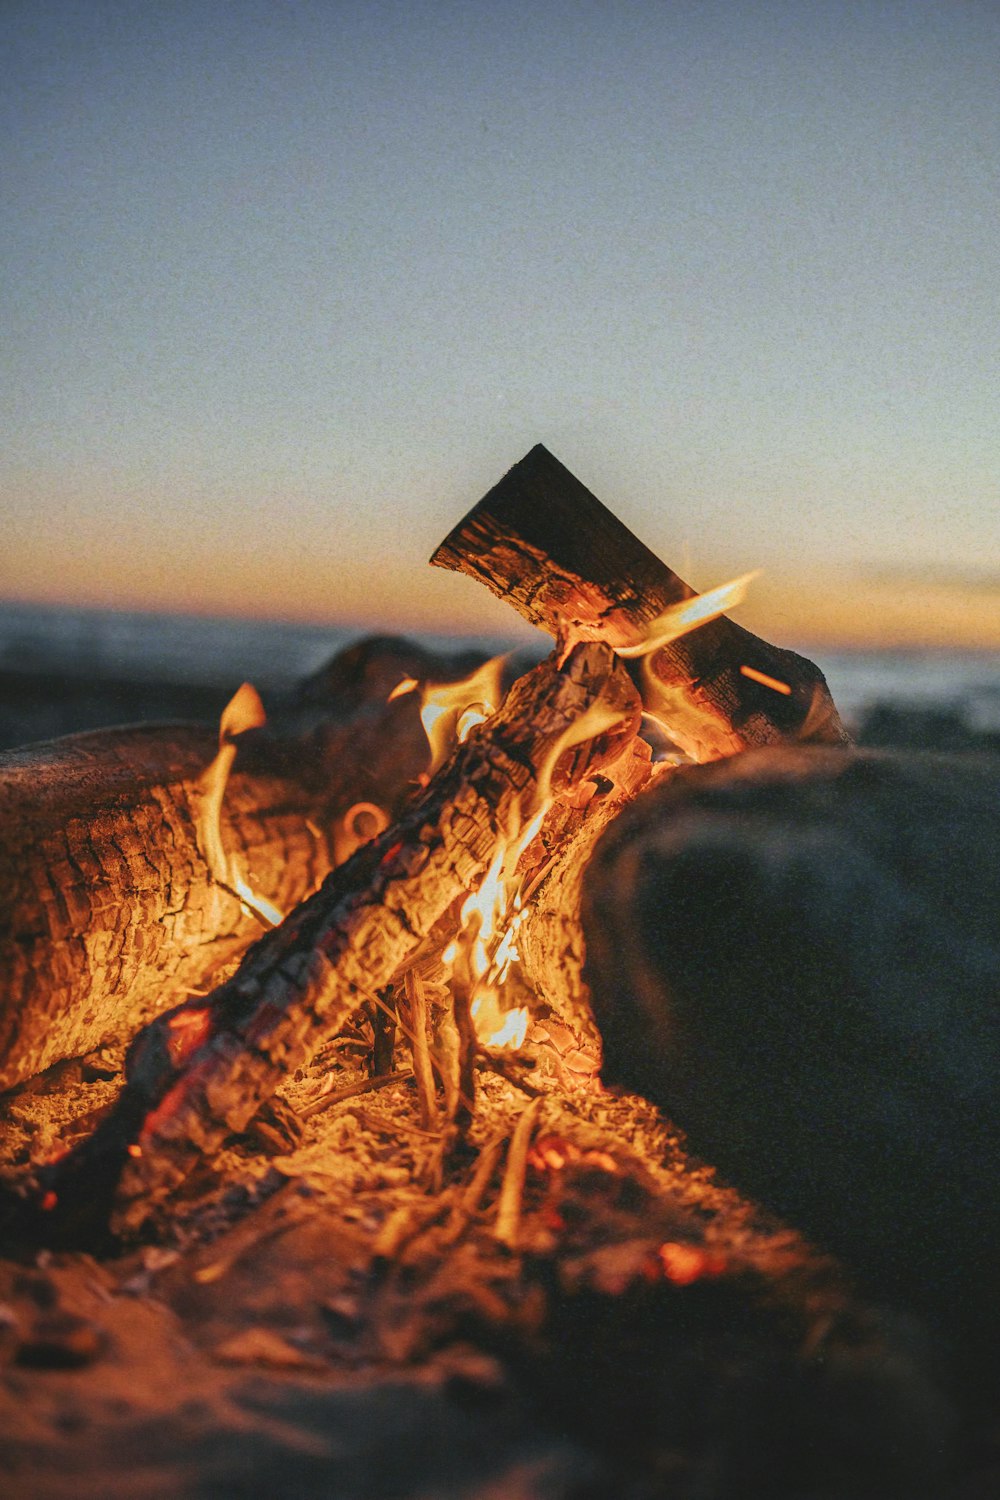 a close-up of a bonfire